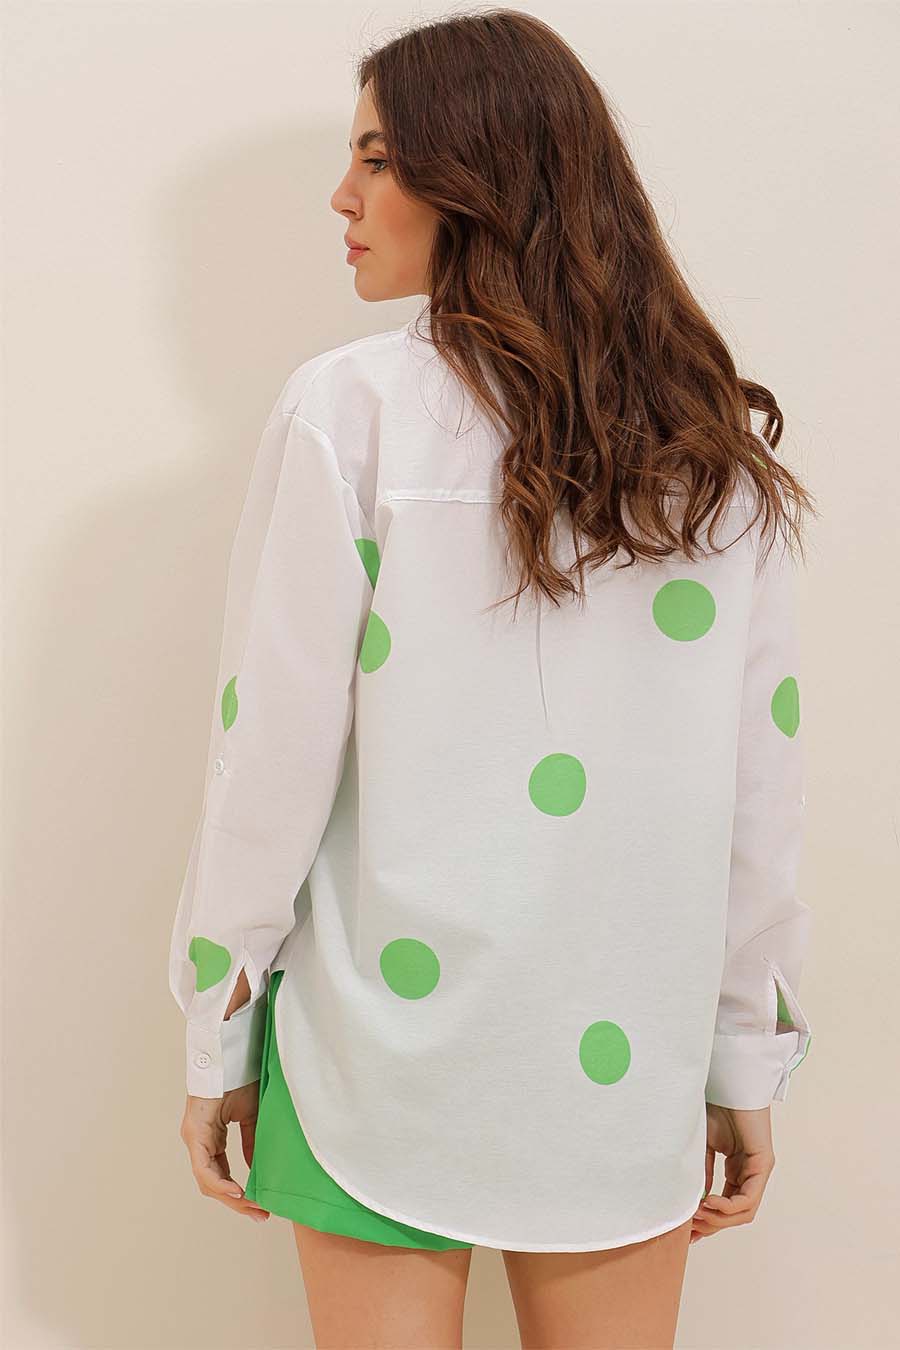 Дамска риза Millie, Бял/Зелен 5